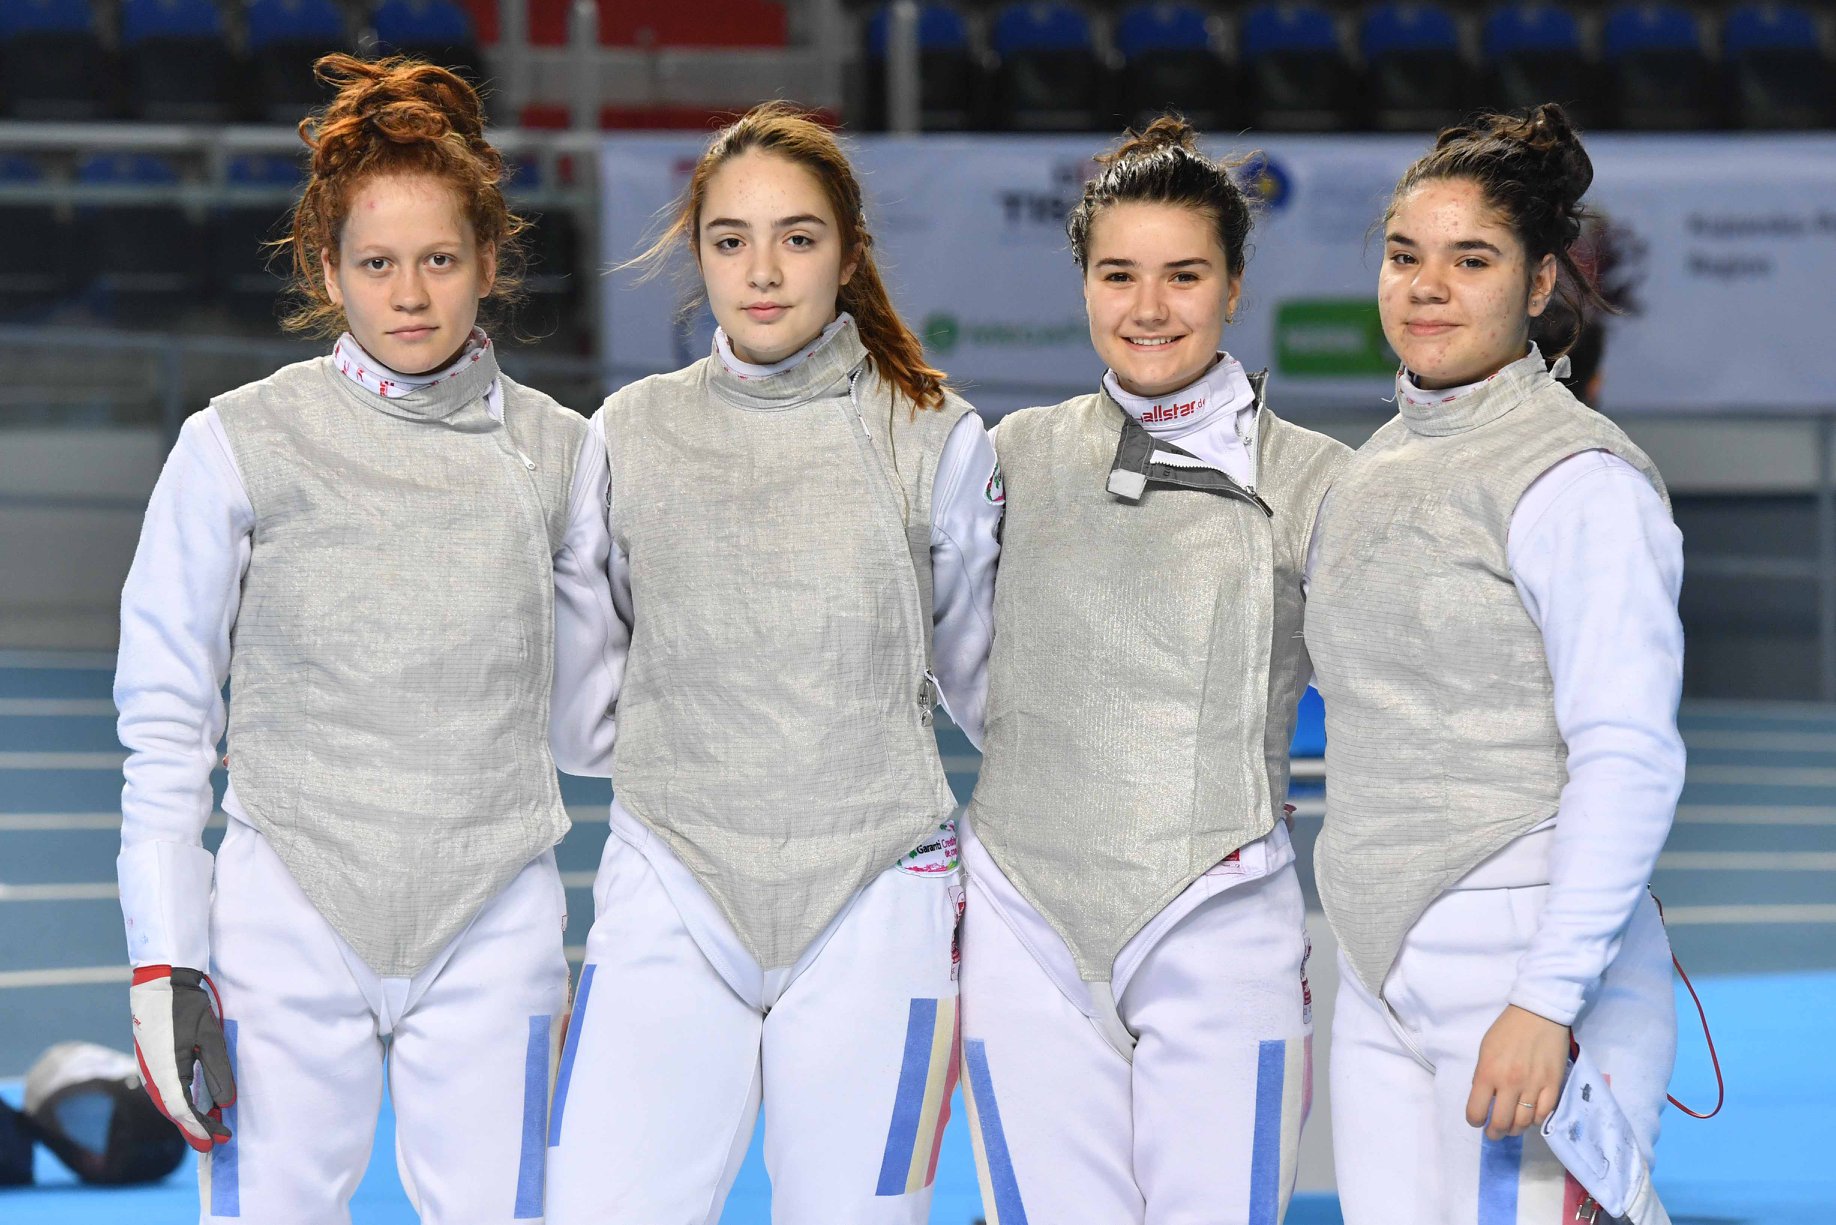 C.M. de cadeți și juniori – Torun 2019 – juniori, floretă feminin și masculin, echipe